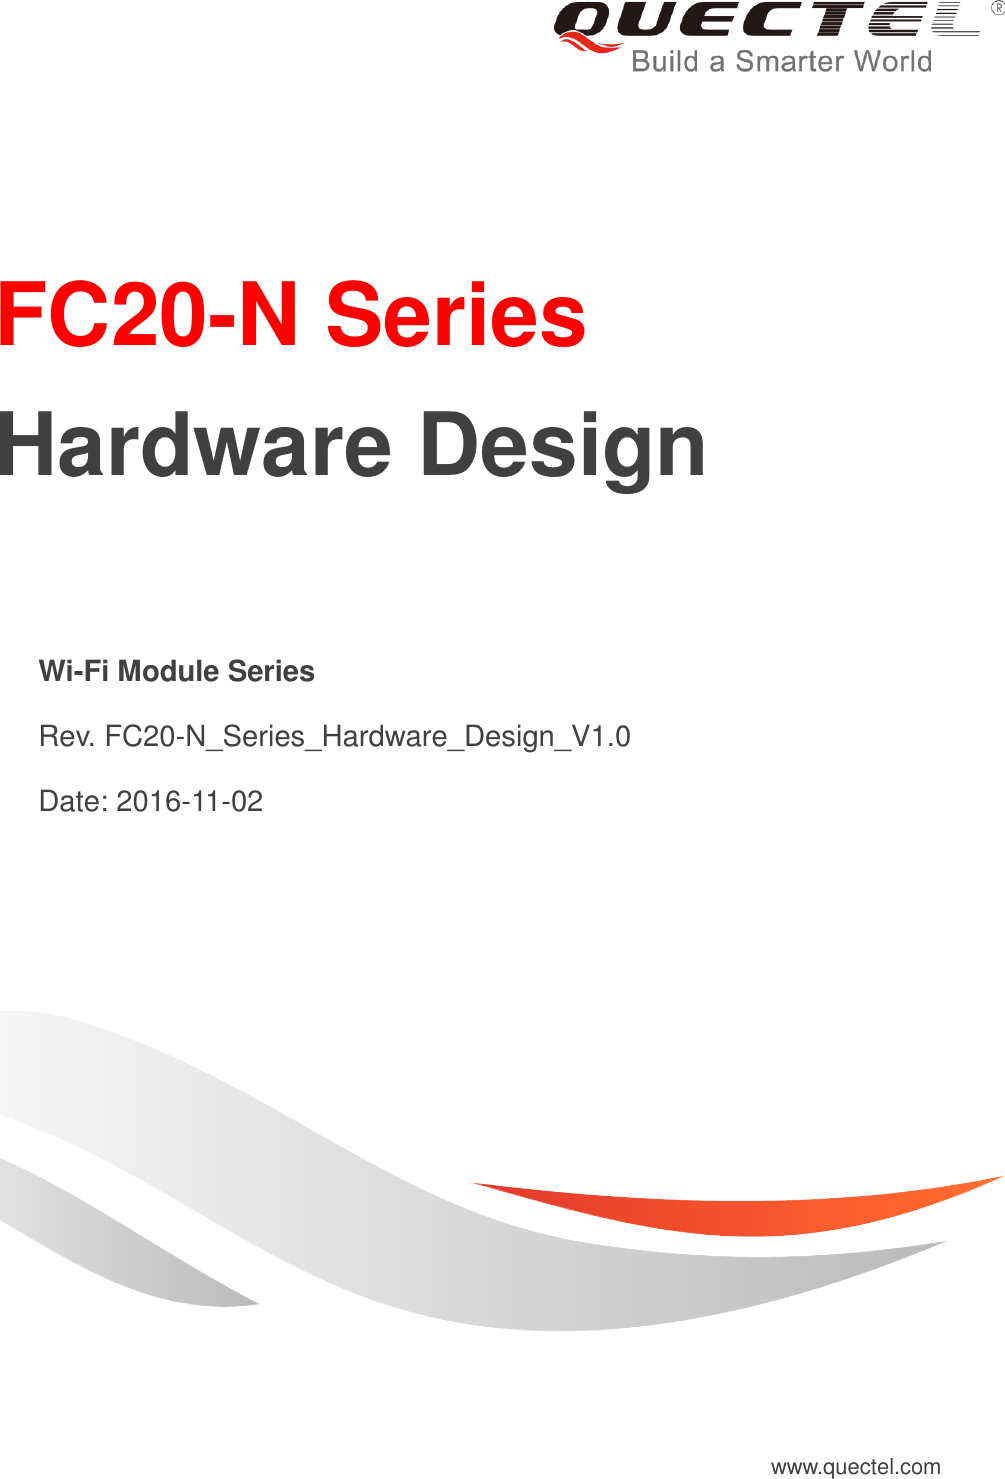     FC20-N Series     Hardware Design   Wi-Fi Module Series   Rev. FC20-N_Series_Hardware_Design_V1.0   Date: 2016-11-02 www.quectel.com 